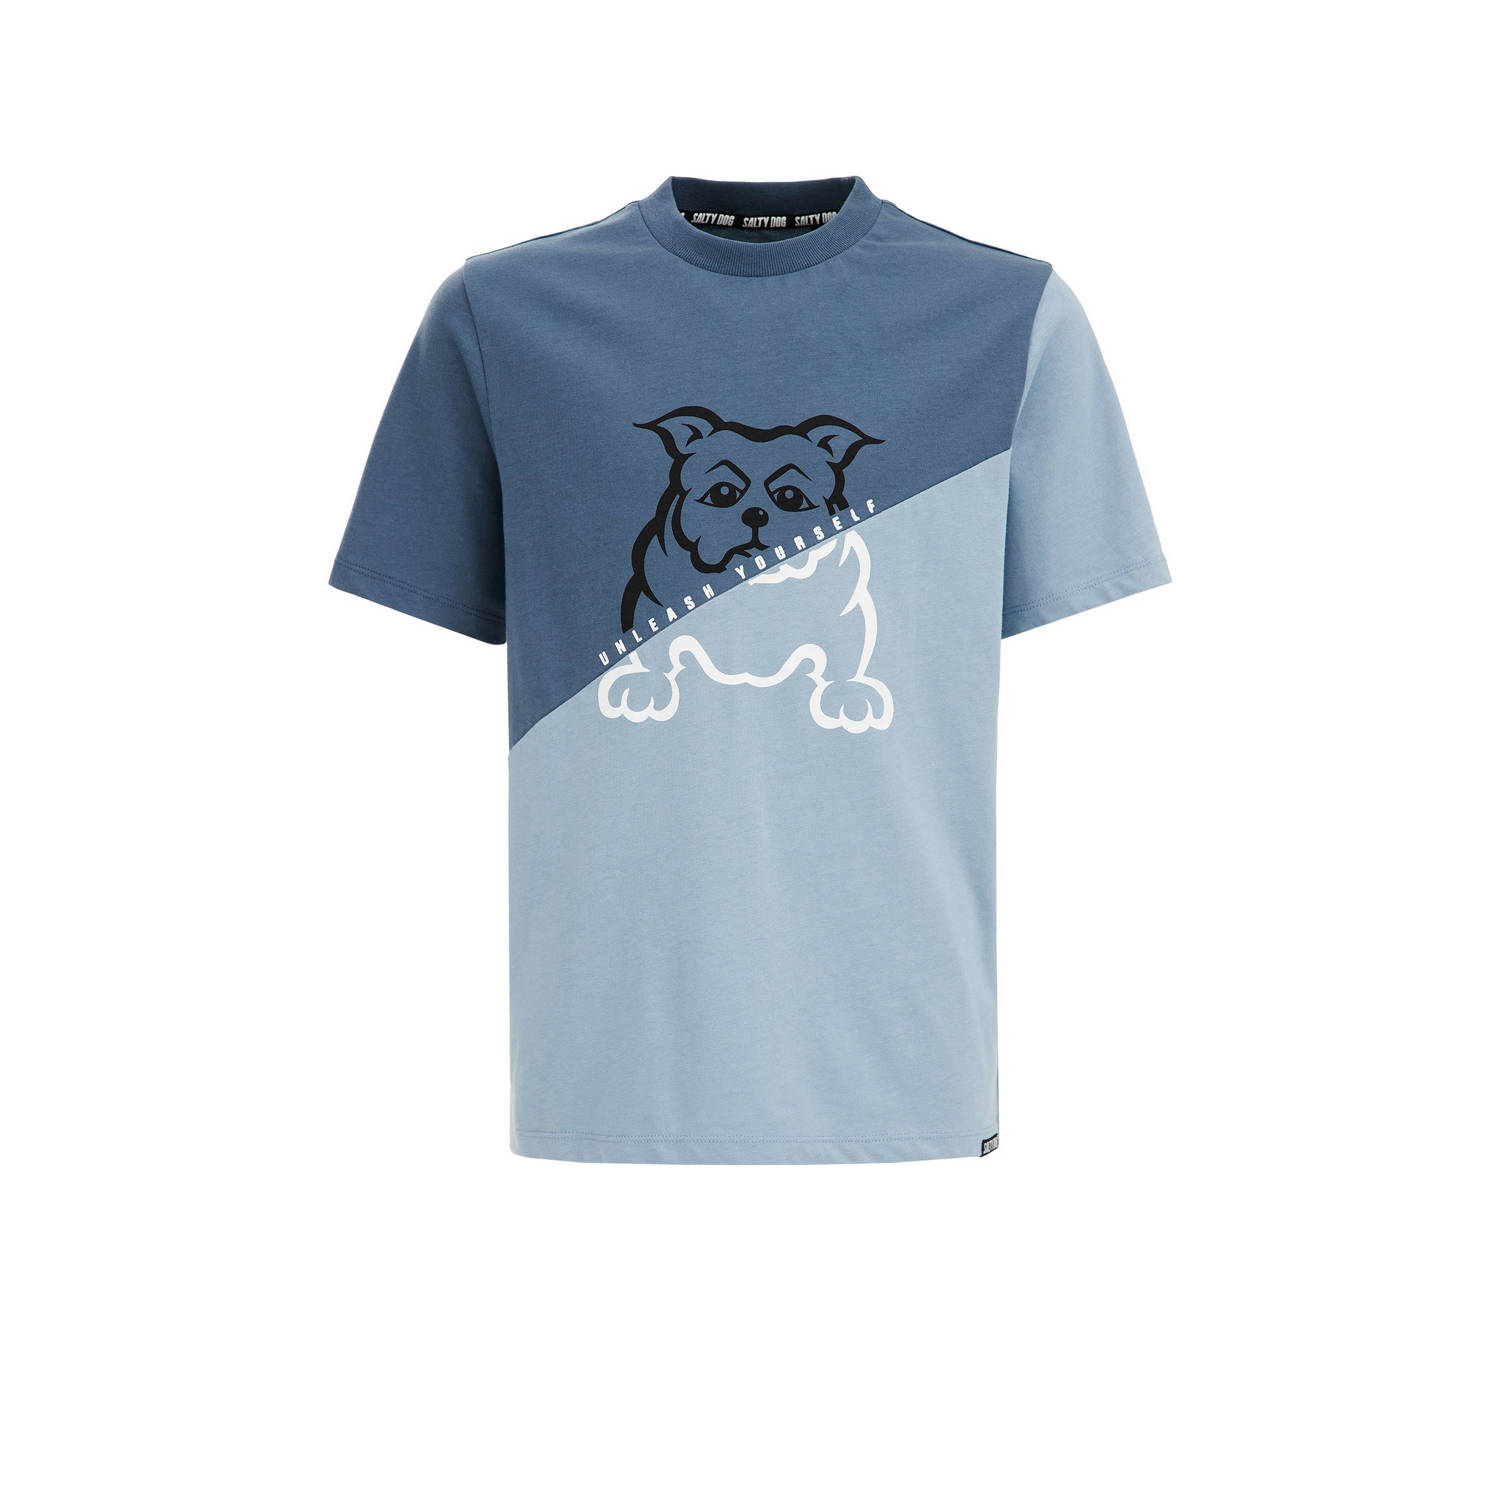 WE Fashion T-shirt grijsblauw Jongens Biologisch katoen Ronde hals Meerkleurig 110 116